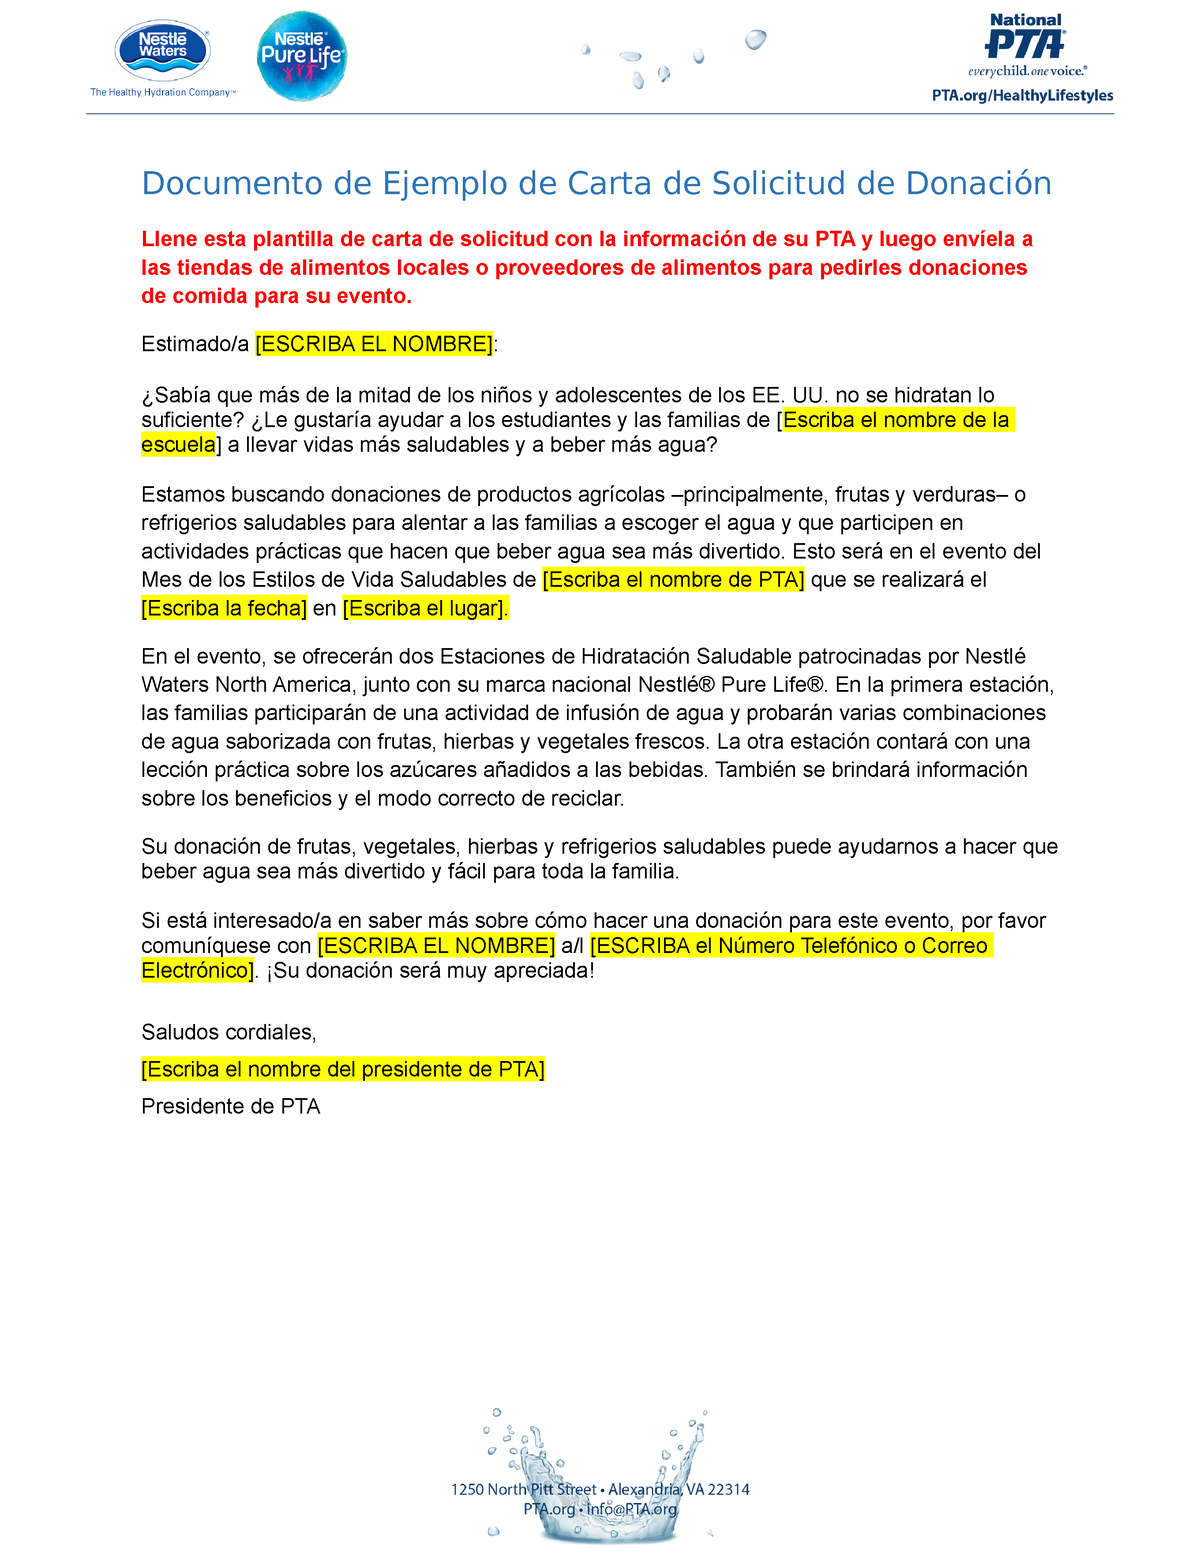 Sample-donation-solicitation-letter-cc-edits es - Documento de Ejemplo de  Carta de Solicitud de - Studocu